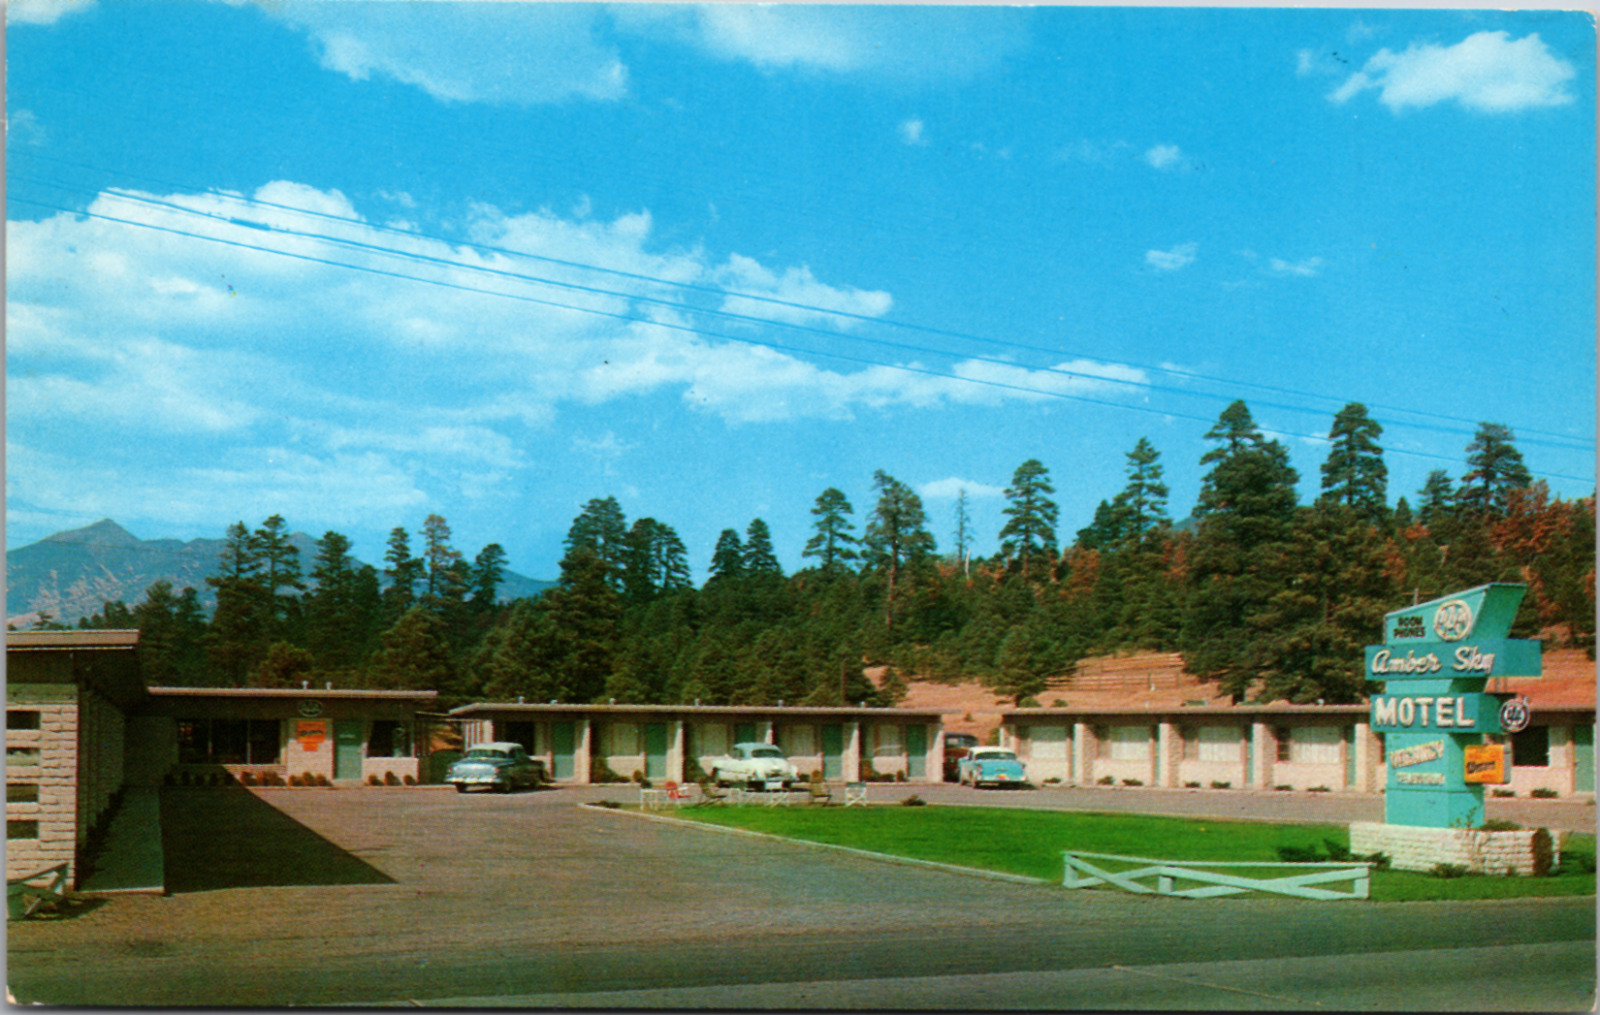 Amber Sky Motel, Flagstaff, Arizona, Vintage Postcard